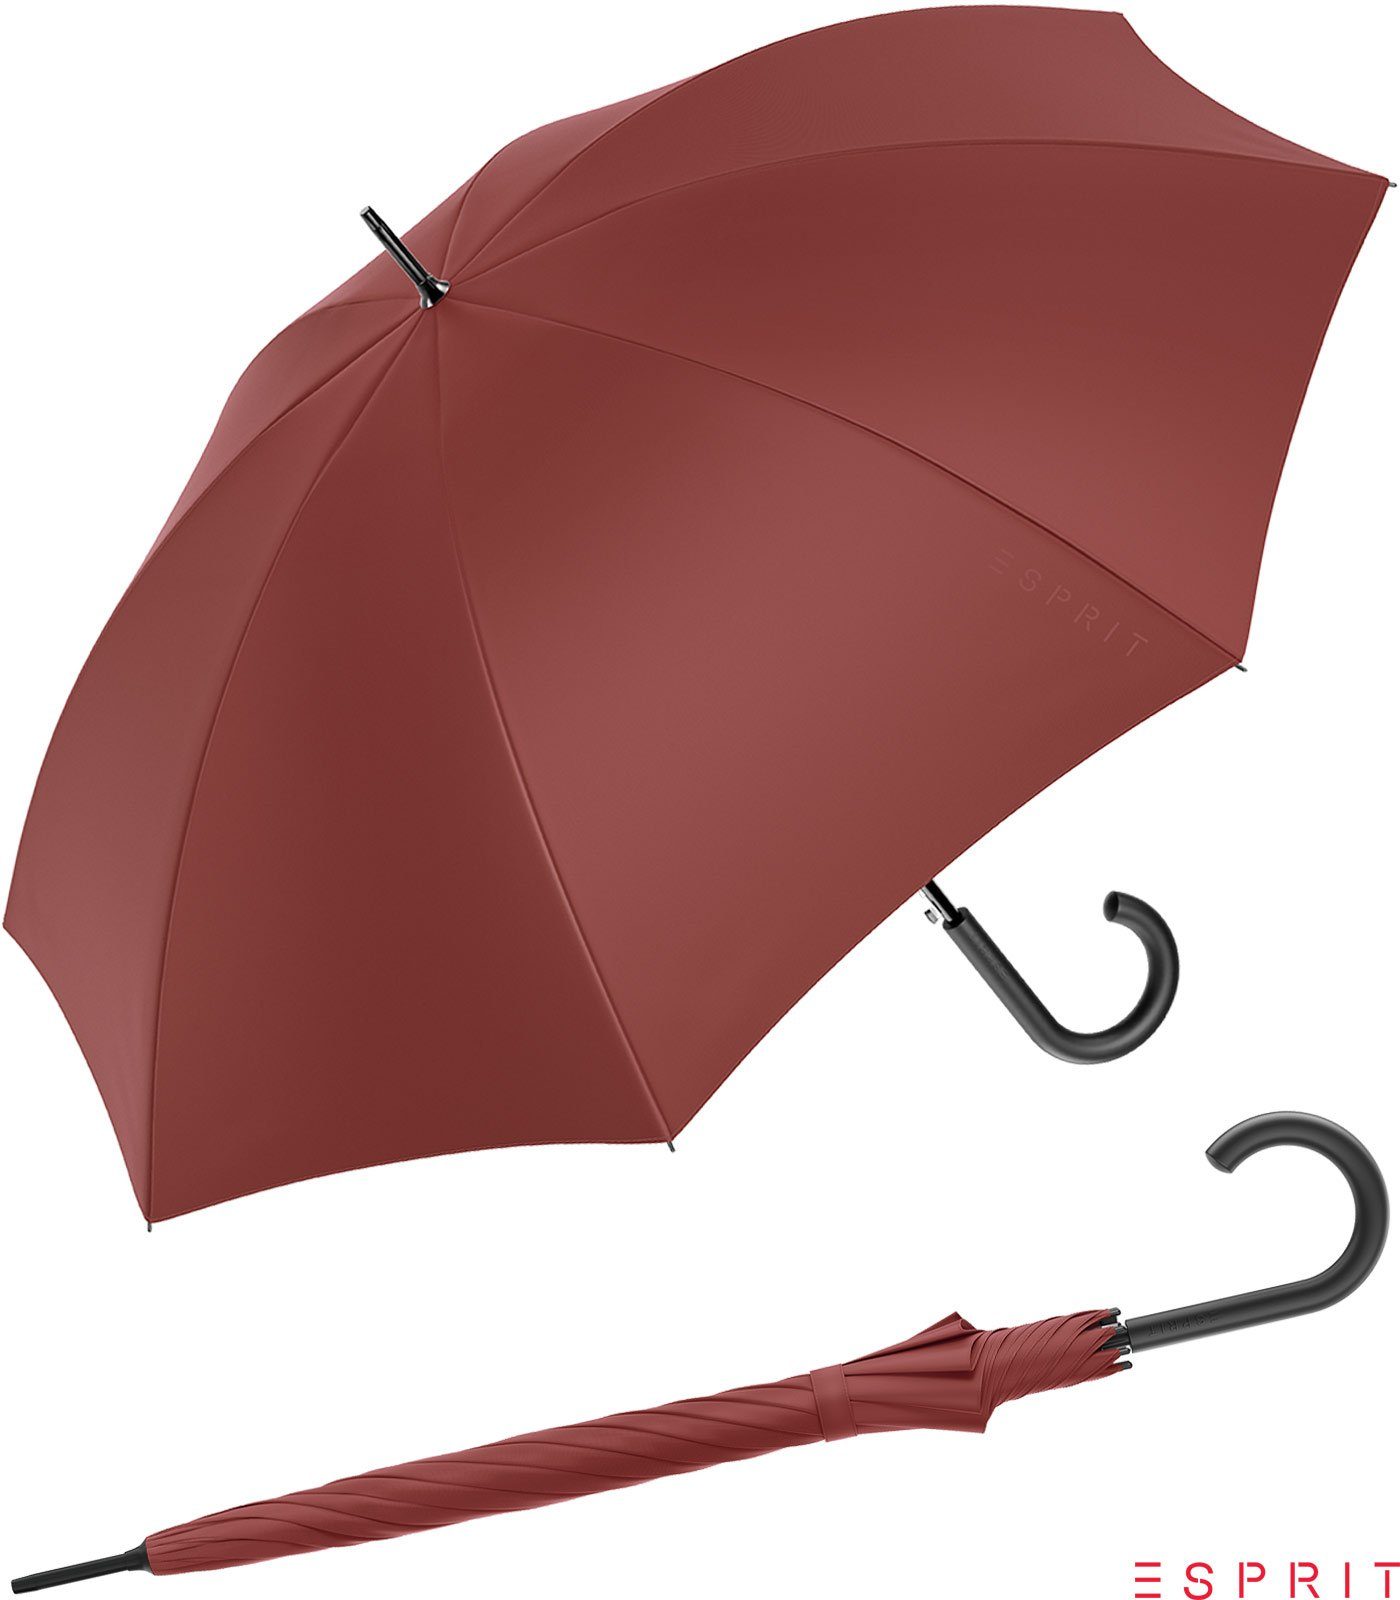 Esprit Langregenschirm Damen mit Auf-Automatik HW 2022 - russet brown, groß, stabil, in den Trendfarben braun